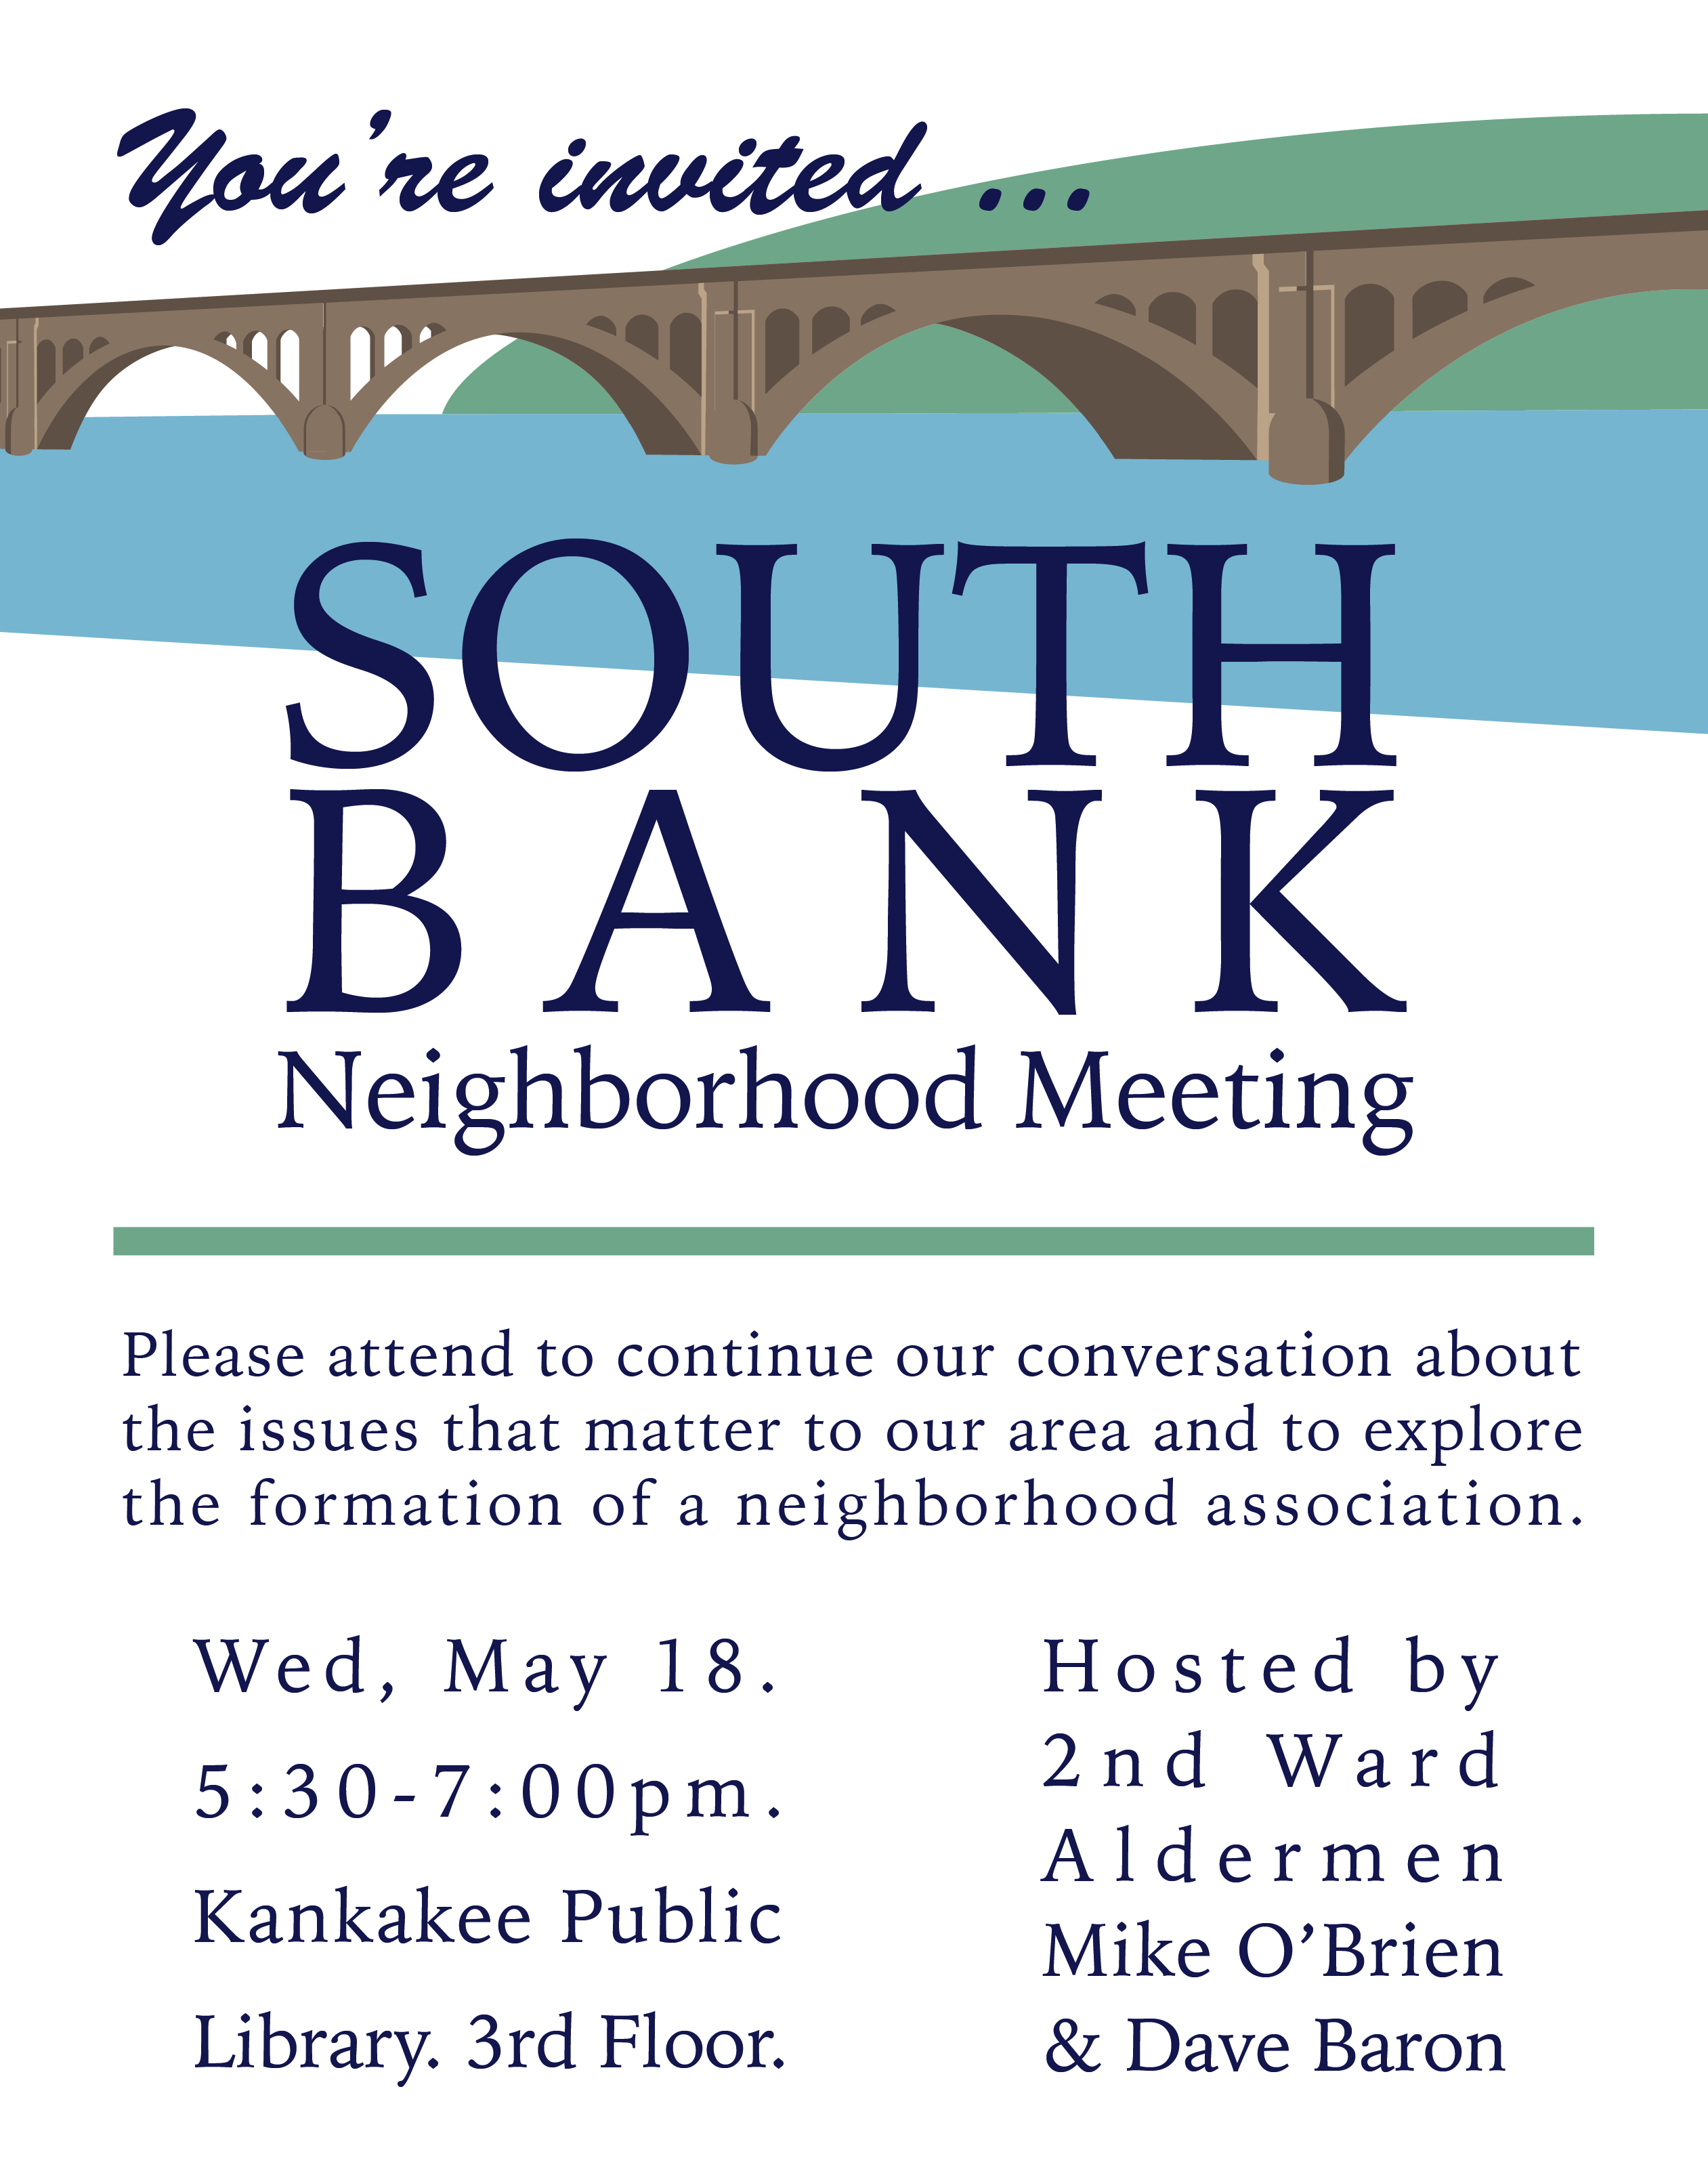 South Bank Neighborhood Meeting